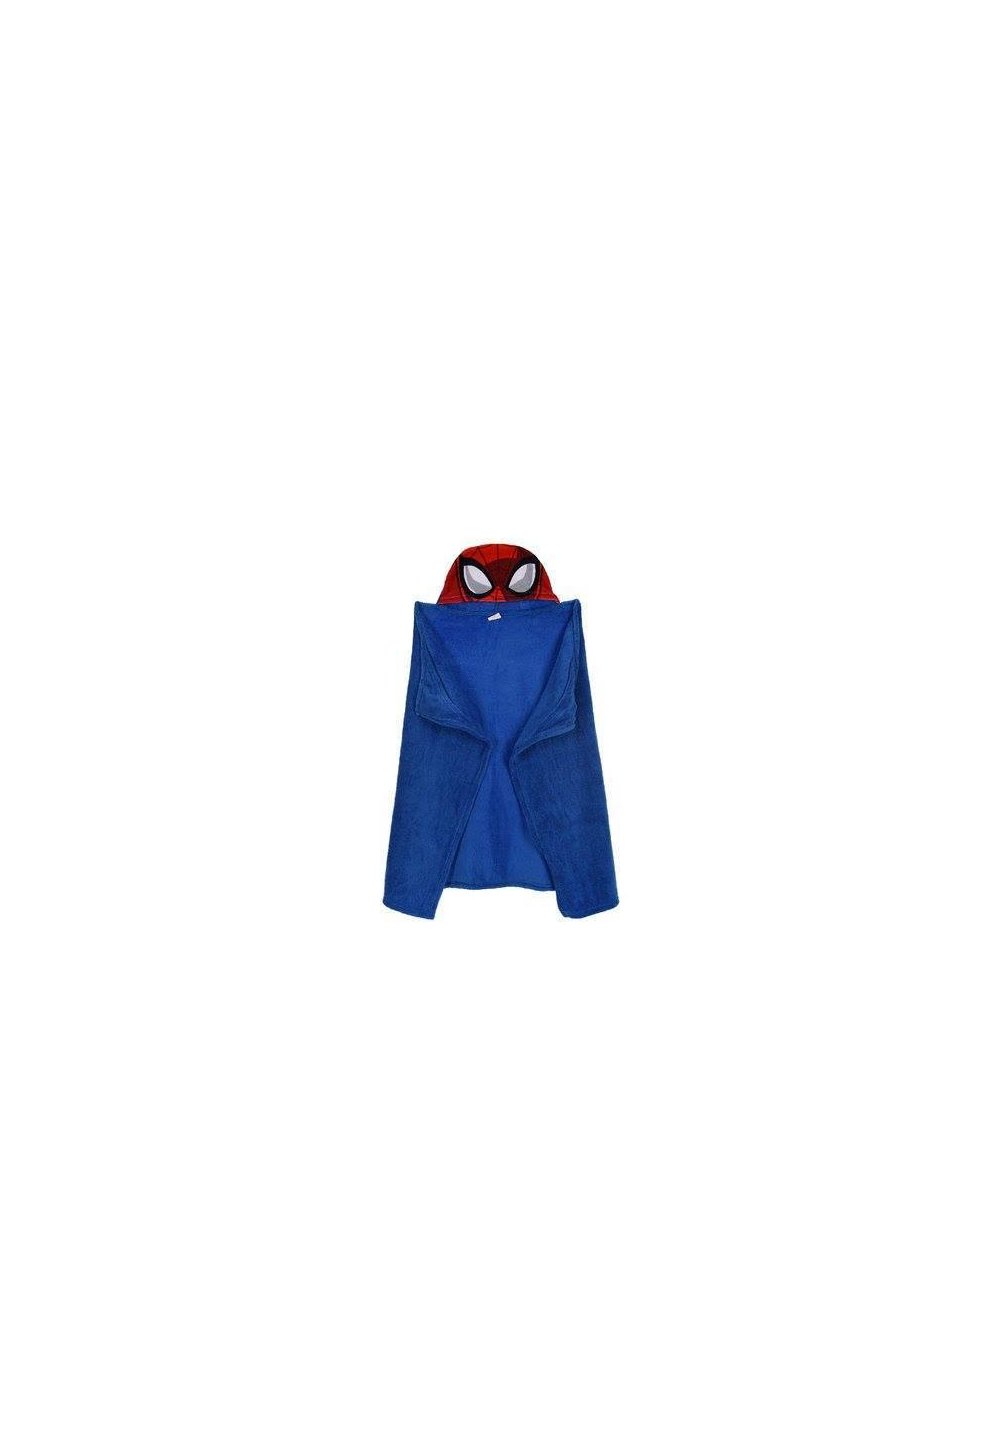 Paturica, pluss cu gluga, albastra, Spider Man, 80 x 120 cm imagine